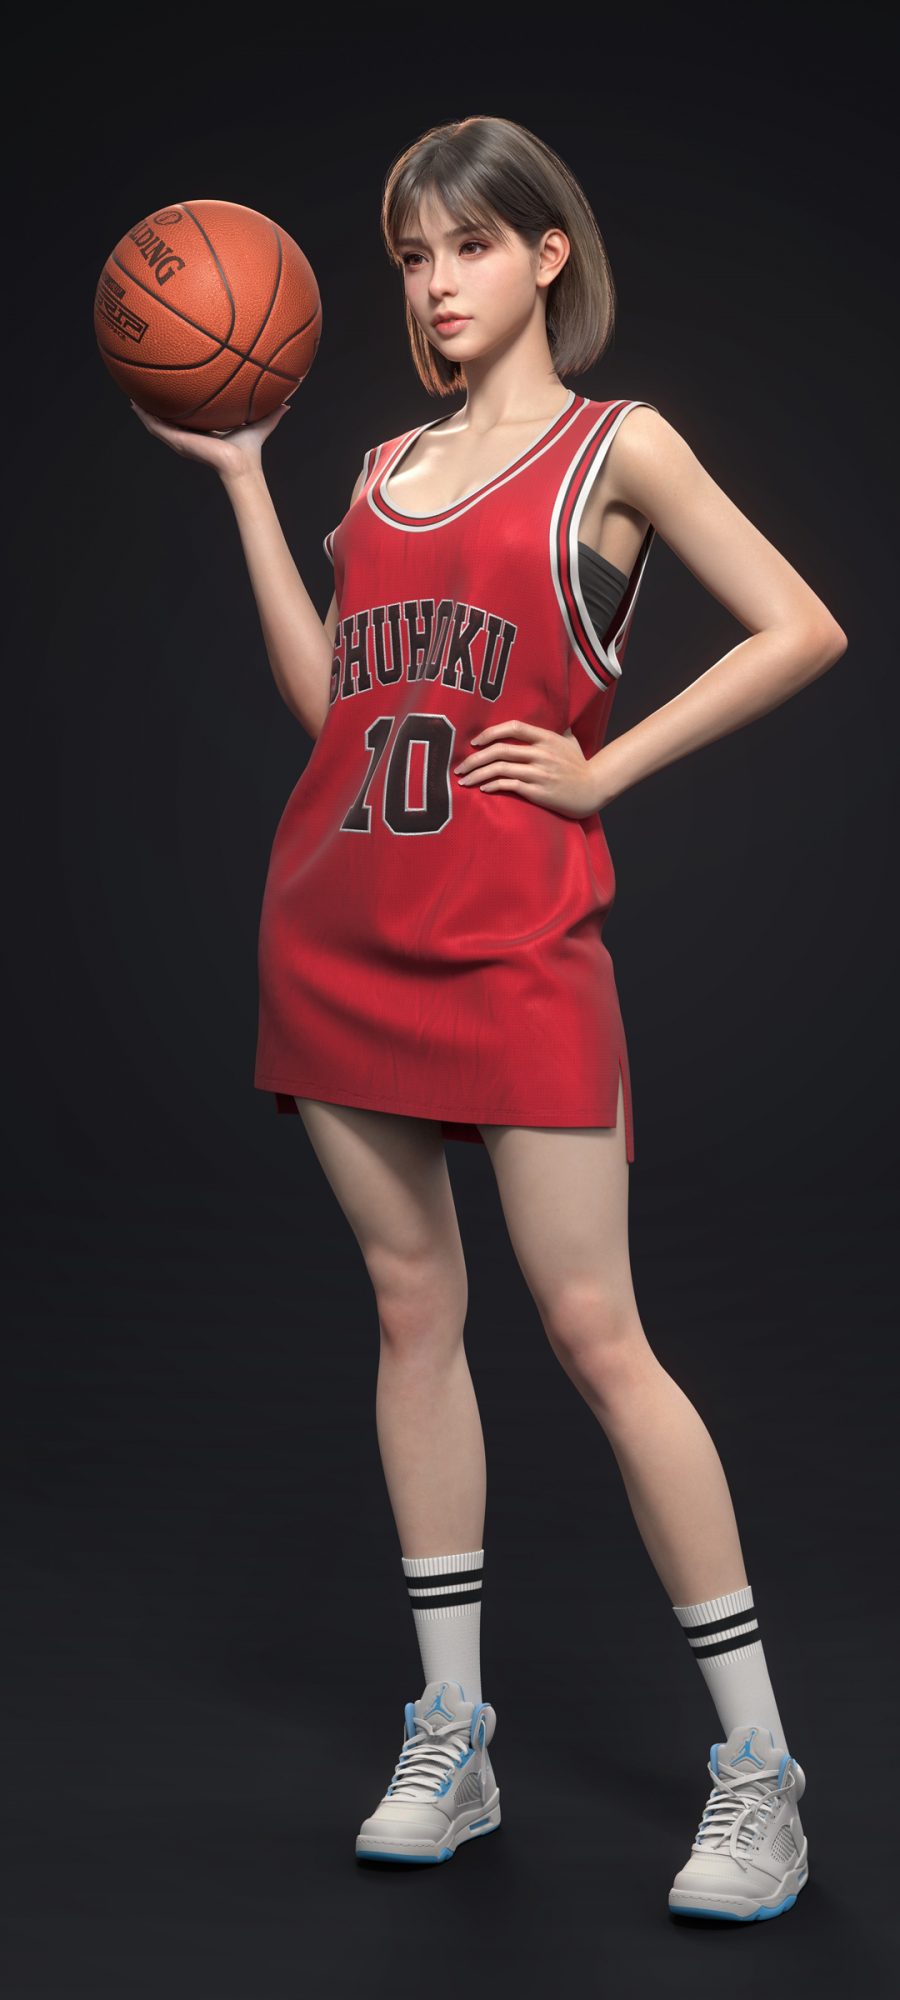 3D 帅气美女 灌篮高手 卢静赤木晴子 球服 篮球手机壁纸图片